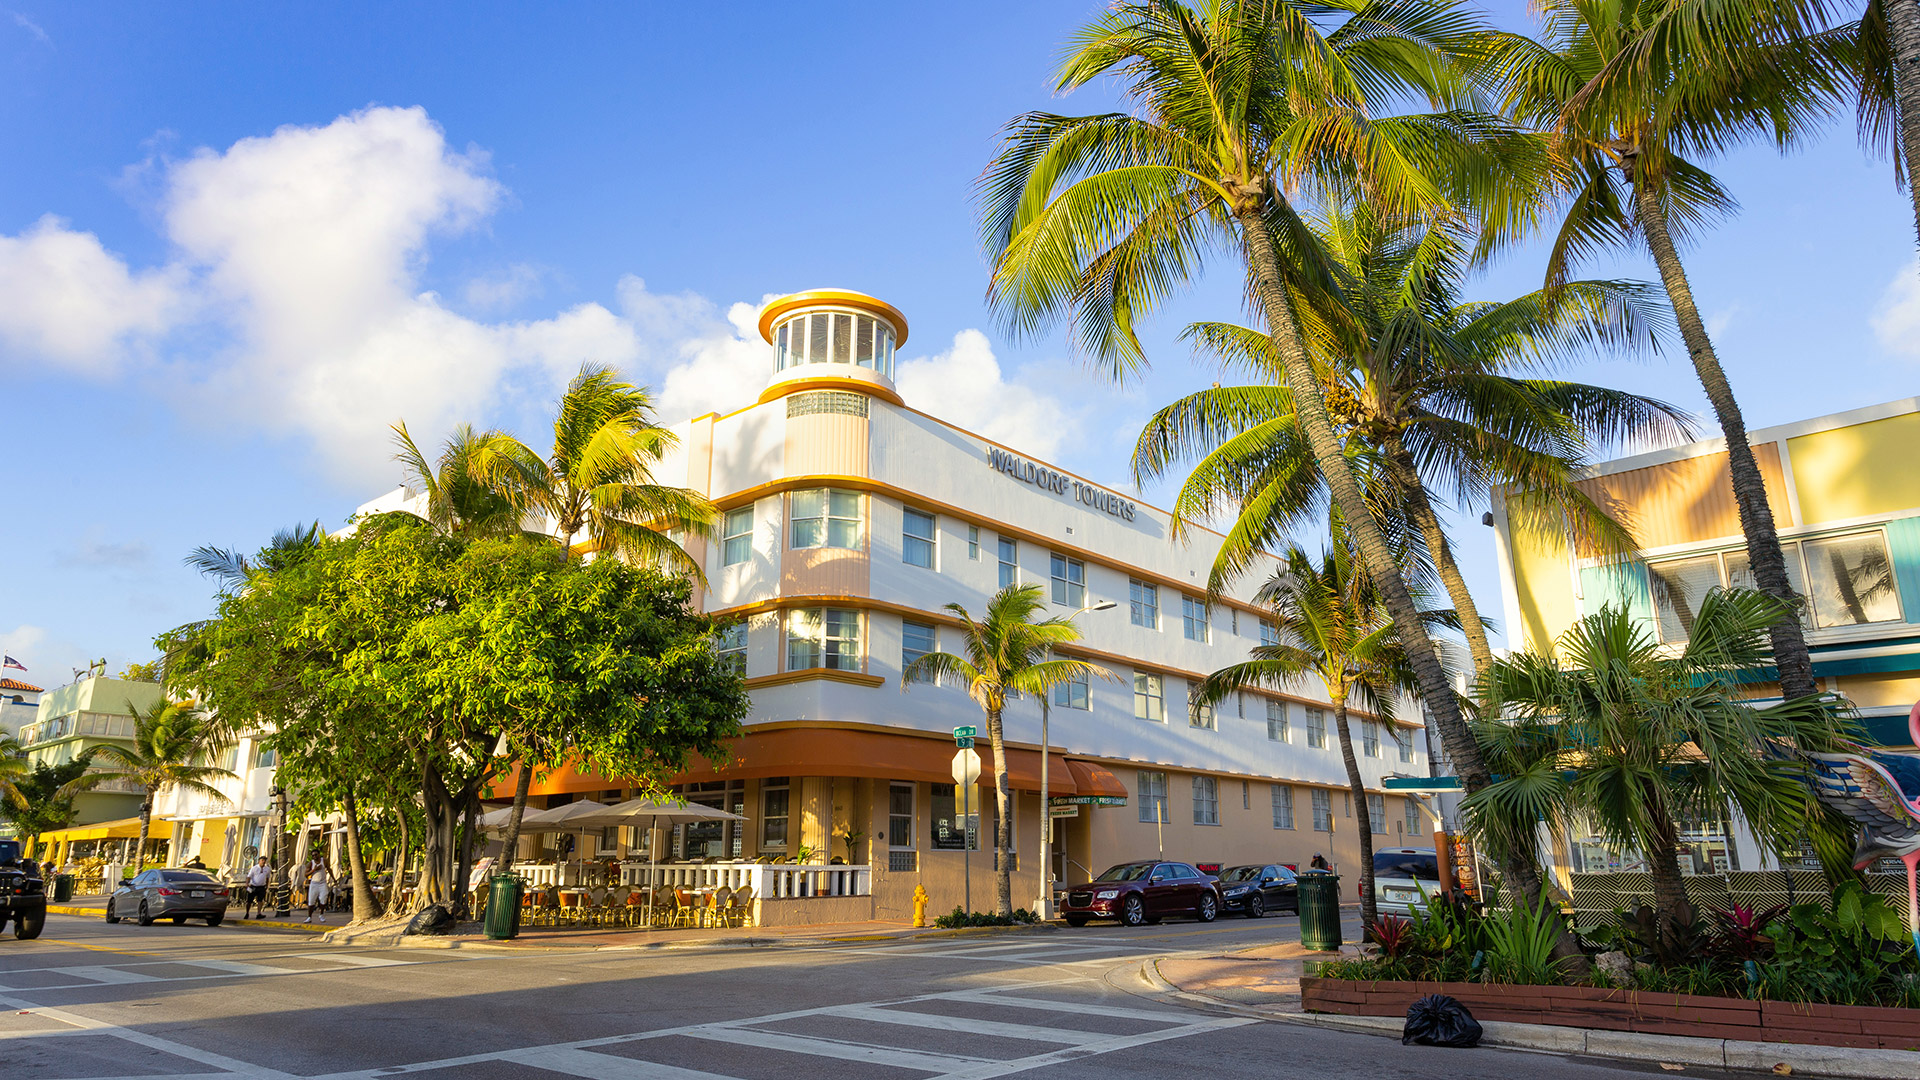 Ocean Drive, lugar emblemático de Miami